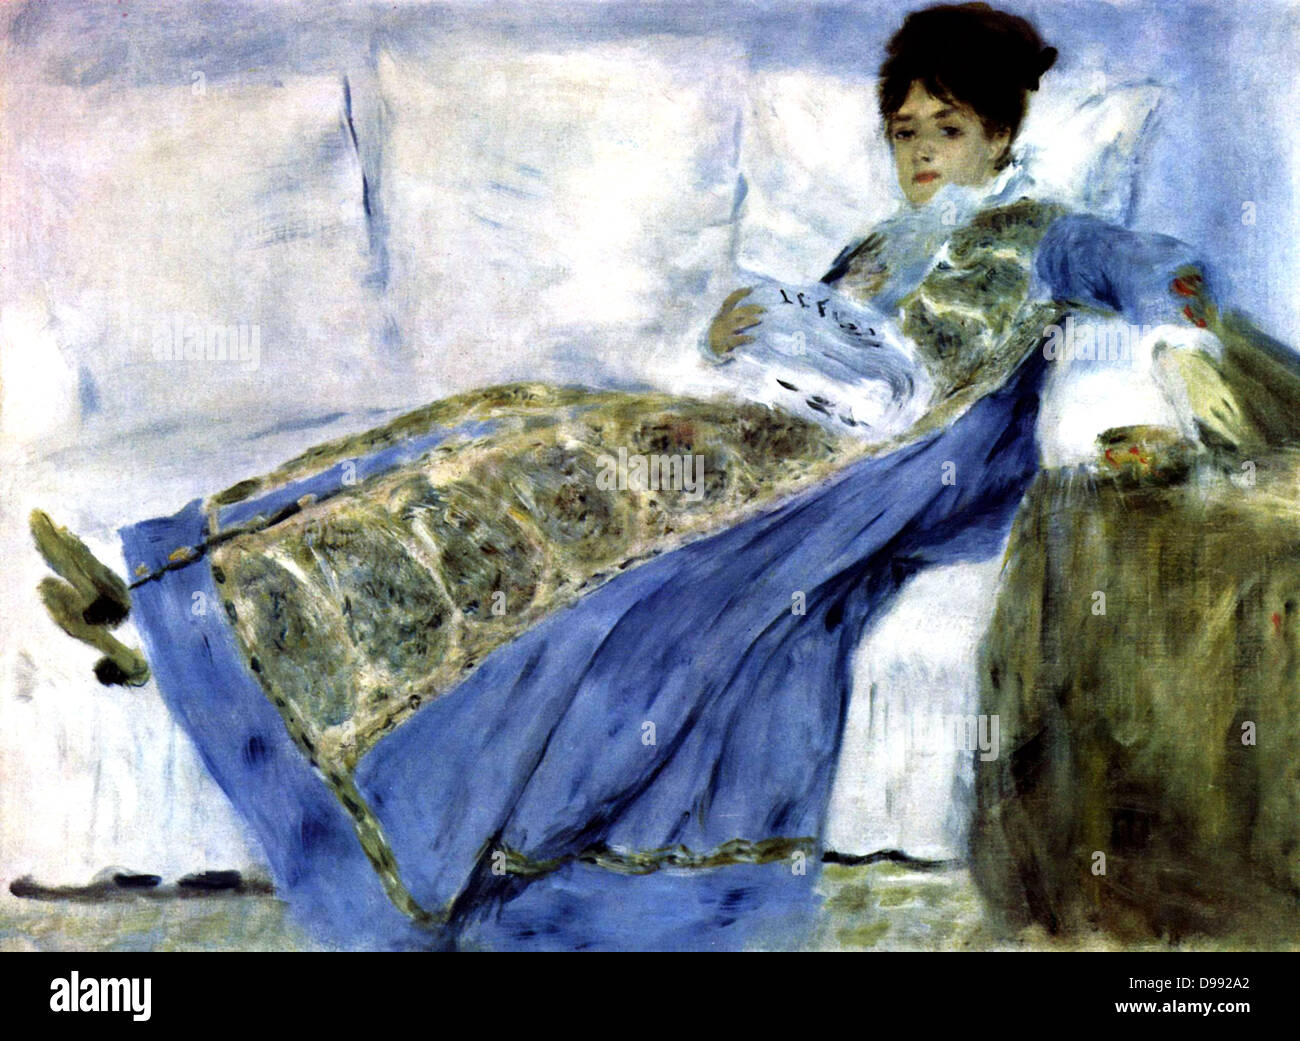 Madame Monet sur un divan' également appelé 'Madame argent lire Le Figaro', 1872. Huile sur toile. Pierre-Auguste Renoir (1841-1919) peintre français. Camille Doncieux (d1879) épouse de Claude Monet. Portrait femelle bleue Banque D'Images